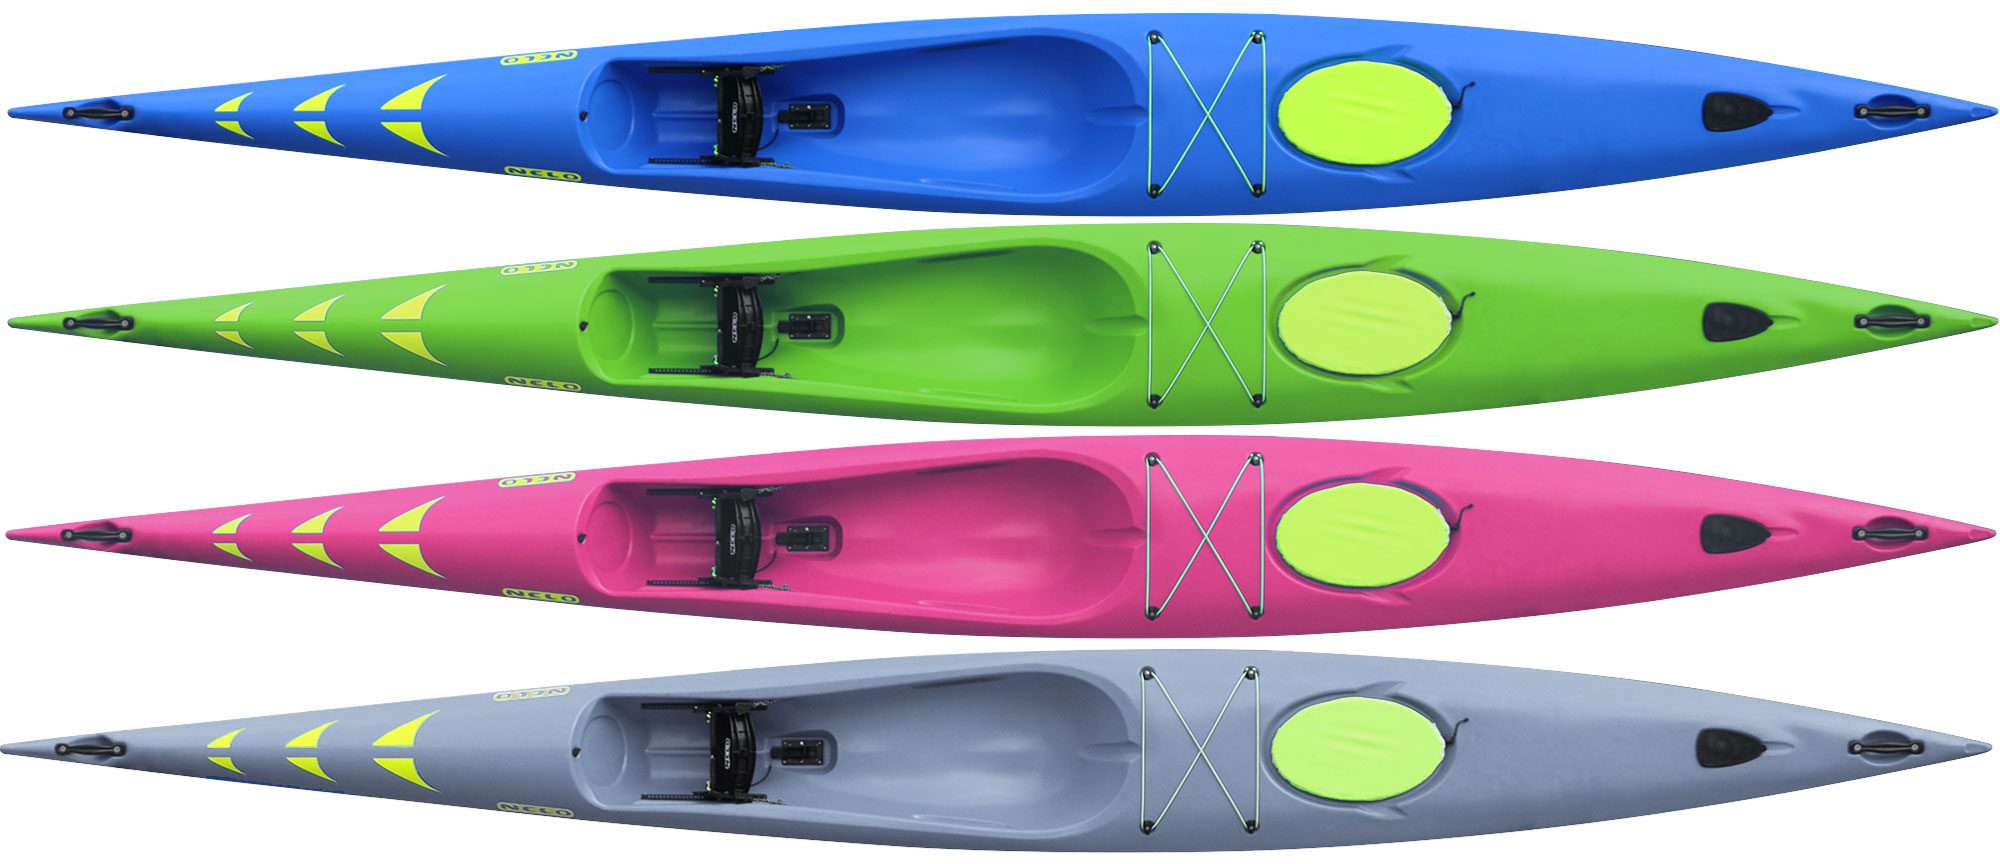 All four Nelo 510 colors, plastic durable surfski